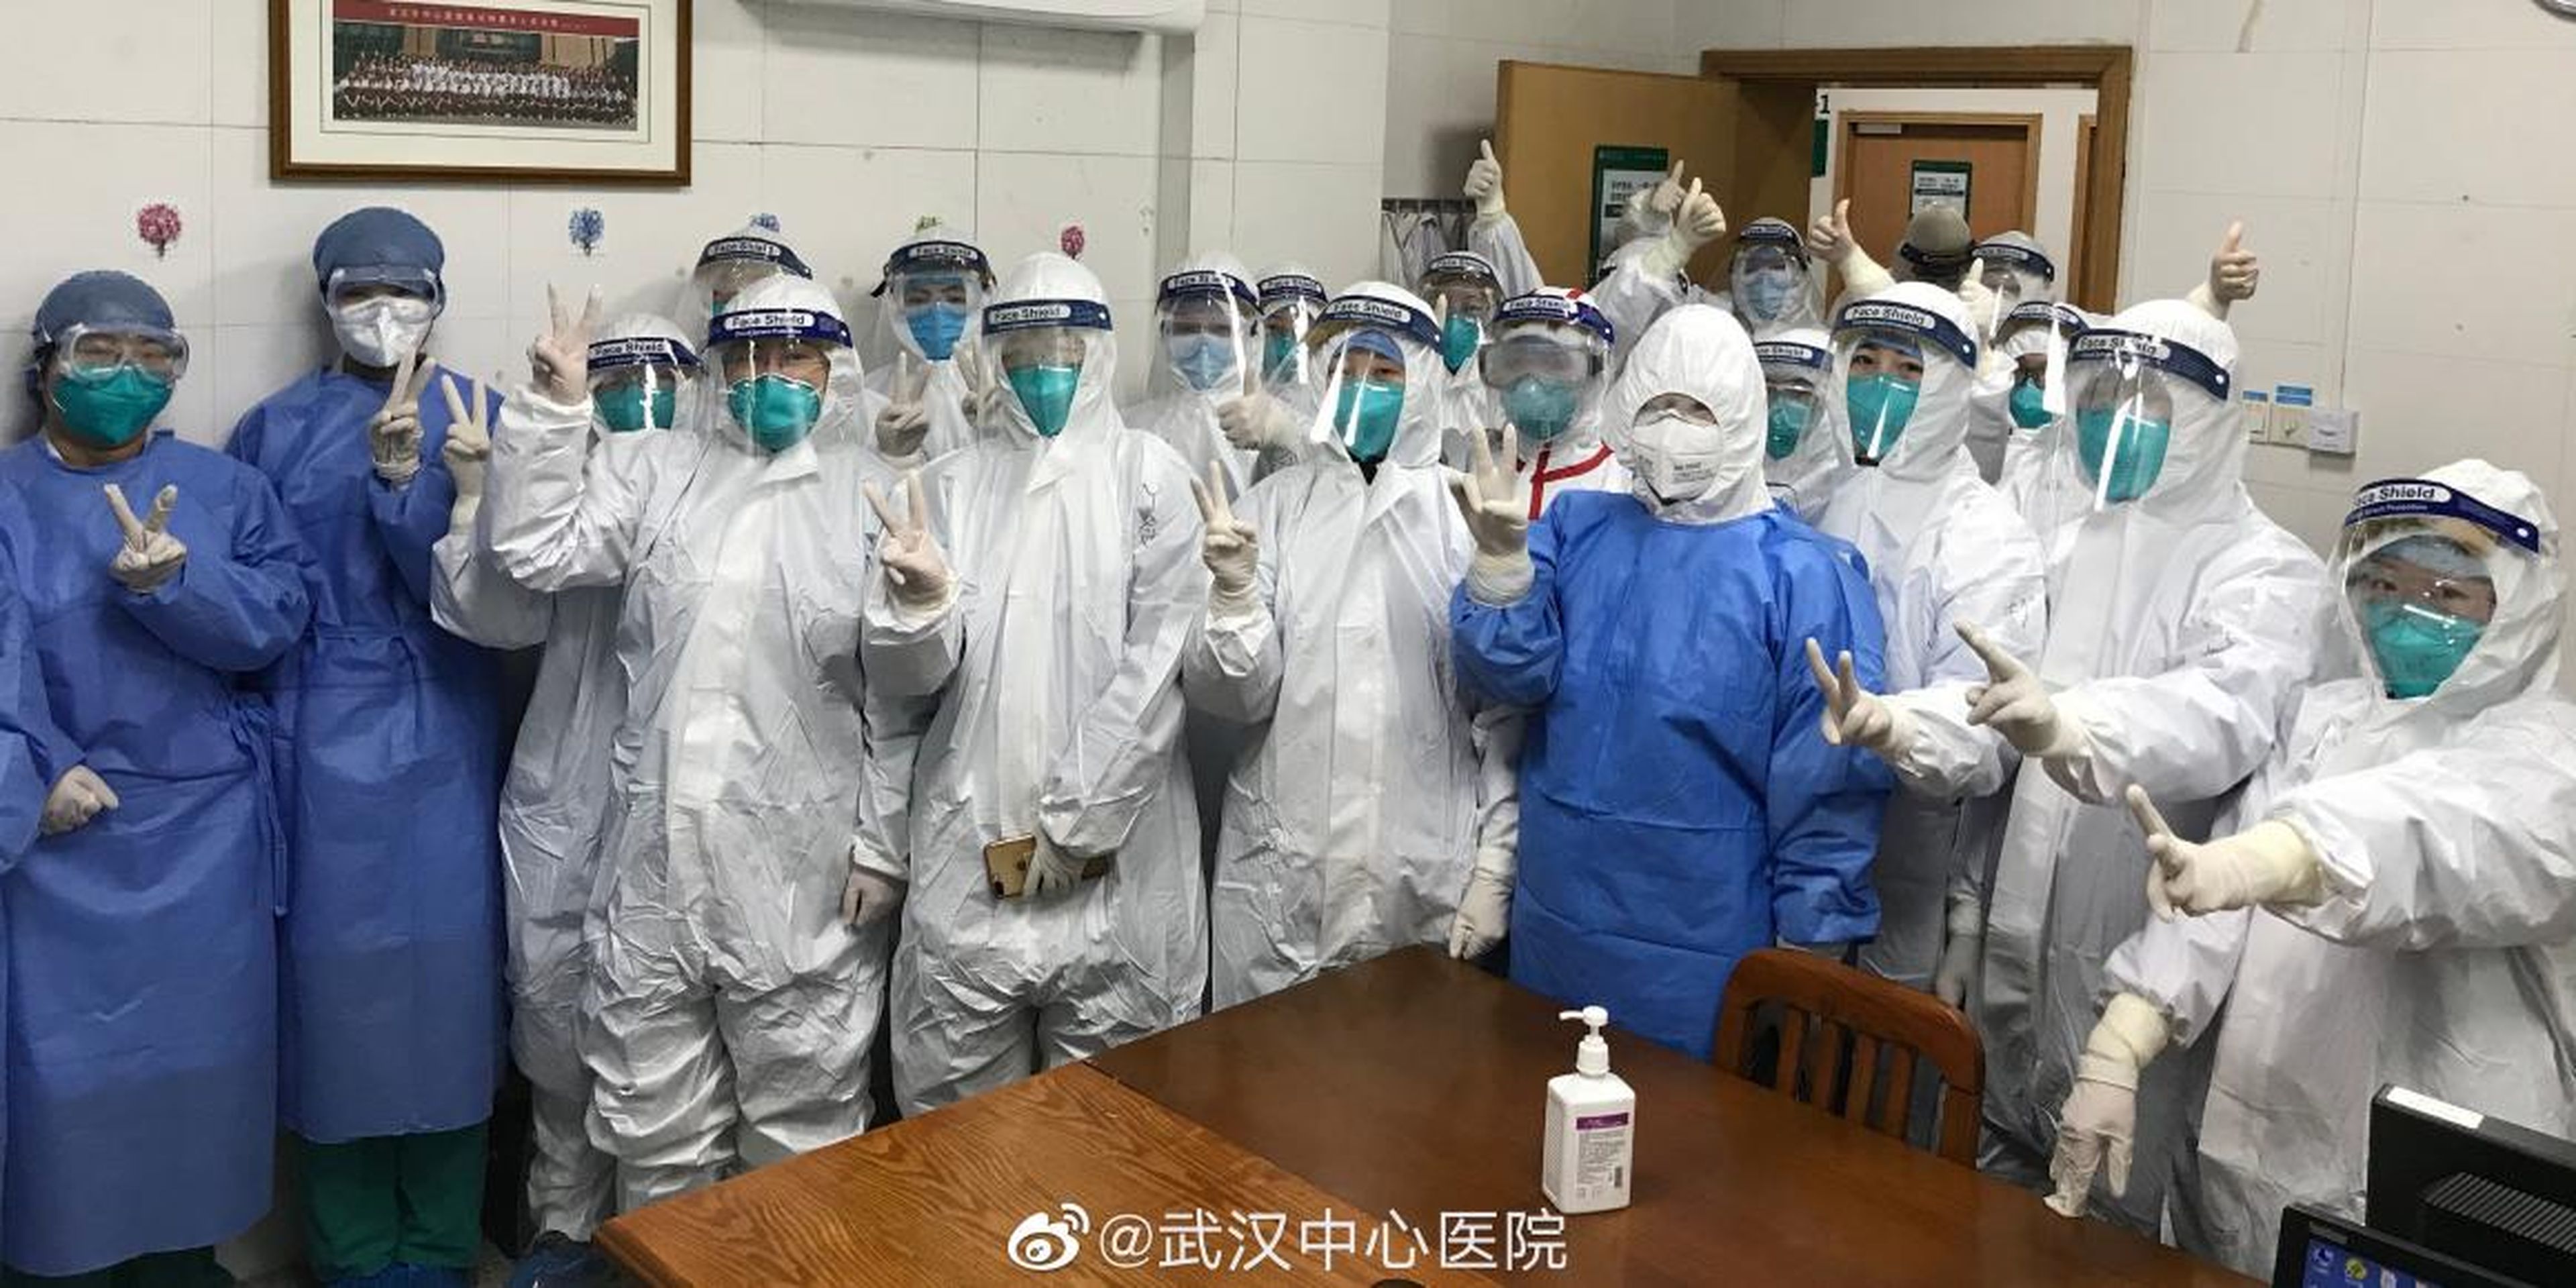 Médicos en Wuhan, China, durante el brote de coronavirus que ha llevado a la ciudad a una situación crítica.